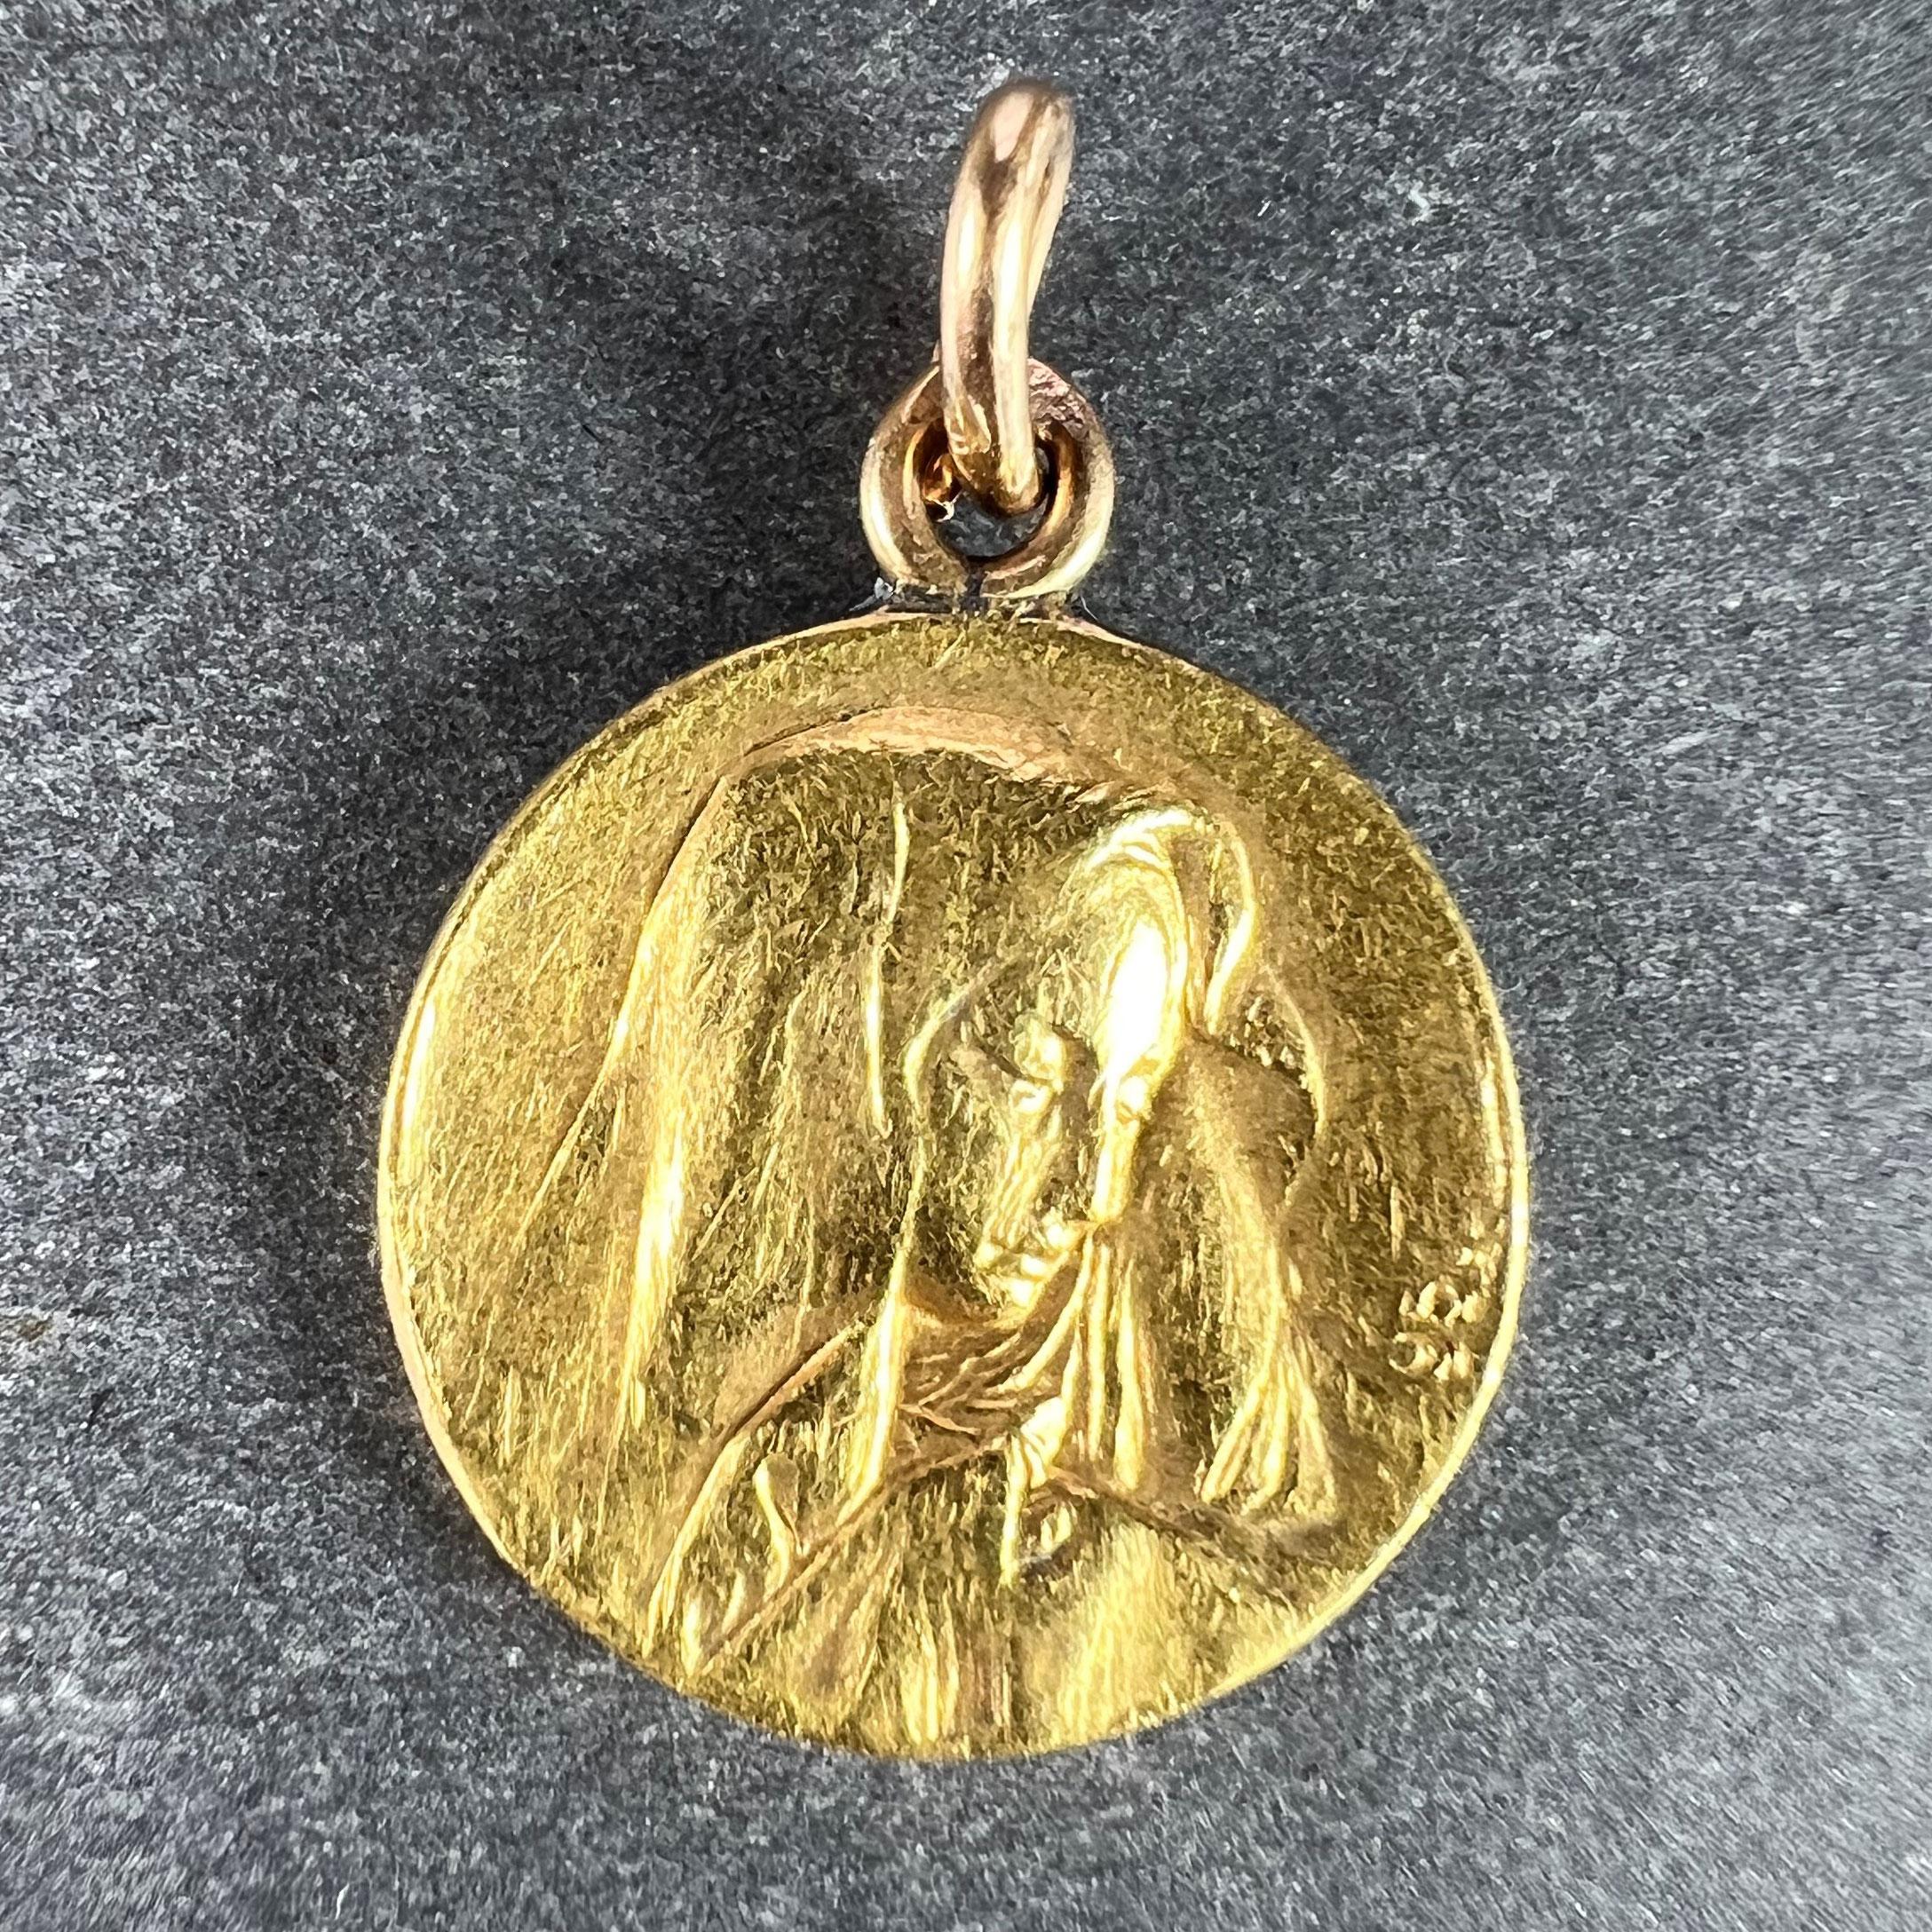 Pendentif à breloques en or jaune 23 carats (23K) conçu comme une médaille représentant la Vierge Marie d'un côté et le profil du pape Pie X de l'autre. Signé Giacomini, estampillé de la marque du hibou pour un minimum d'or 18 carats et